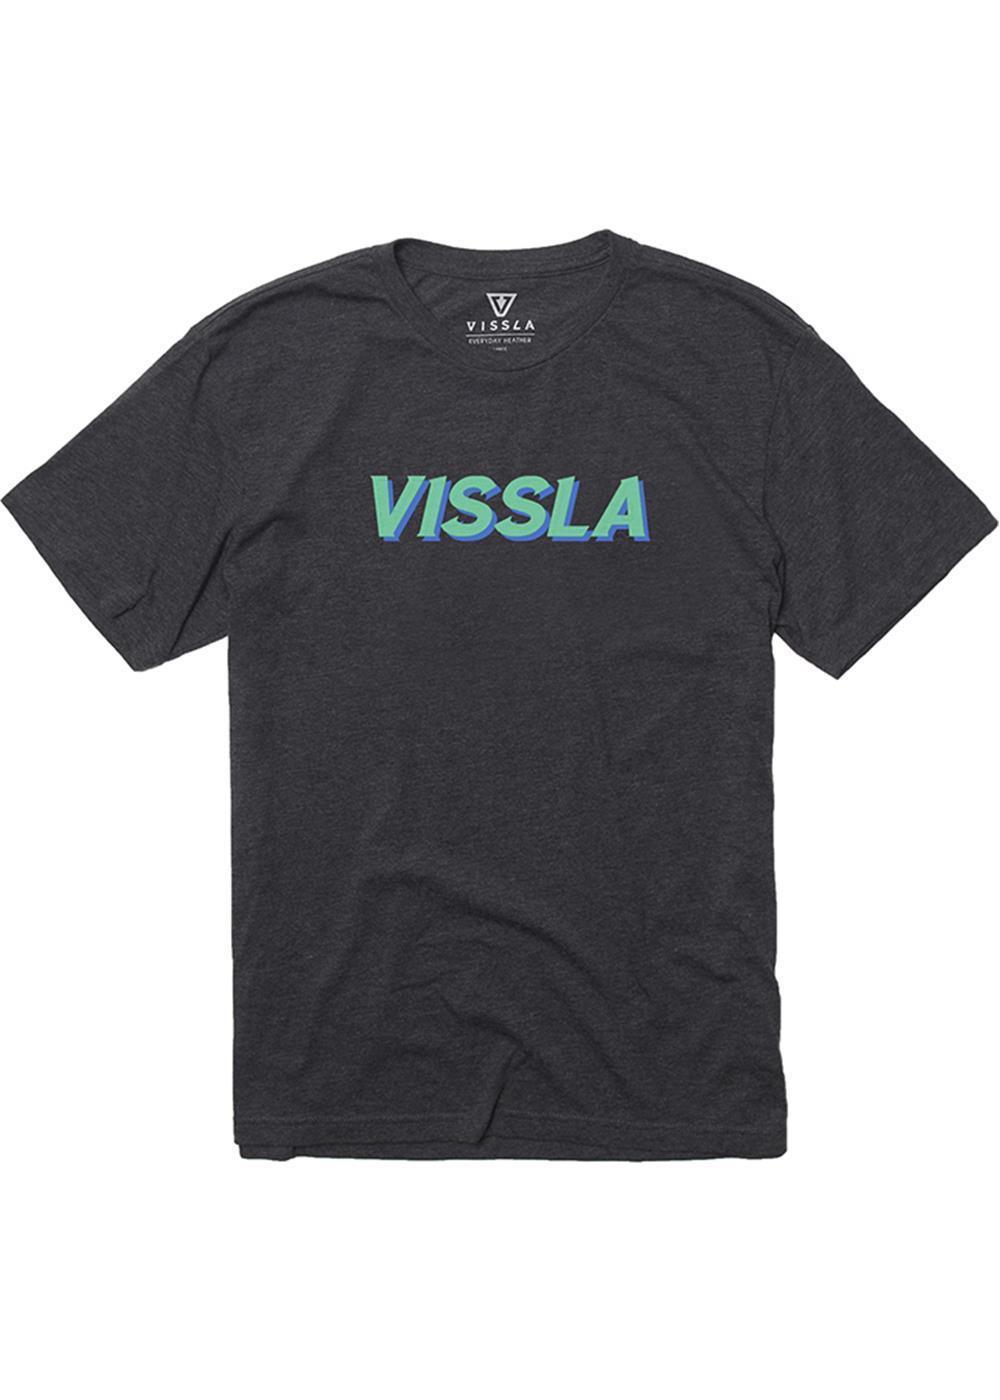 Vissla Vibes Vintage Tee (Black) - KS Boardriders Surf Shop